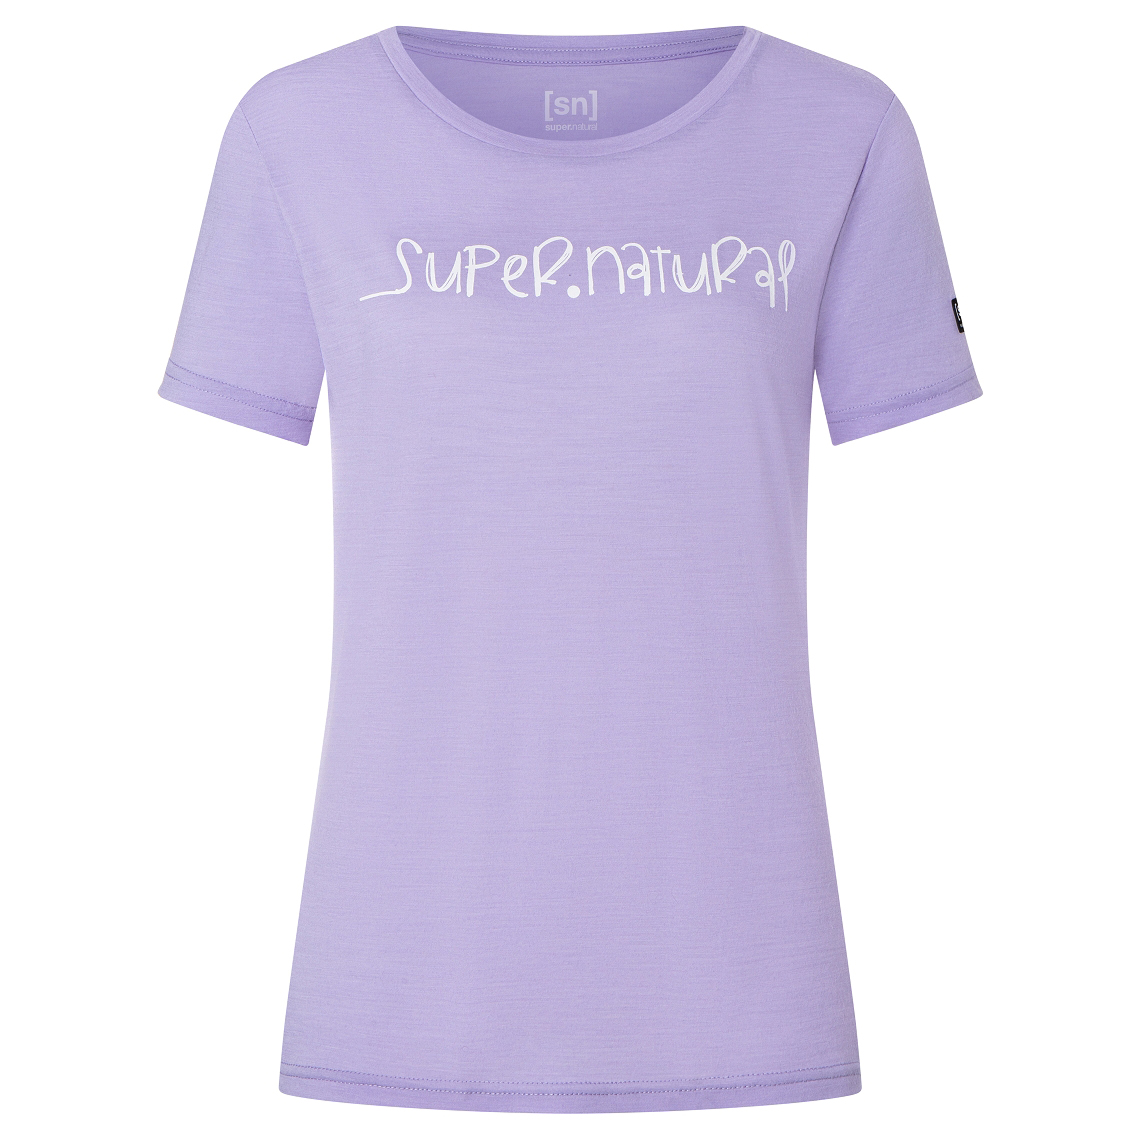 Рубашка из мериноса Super Natural Women's Signature Tee, цвет Lavender/Fresh White